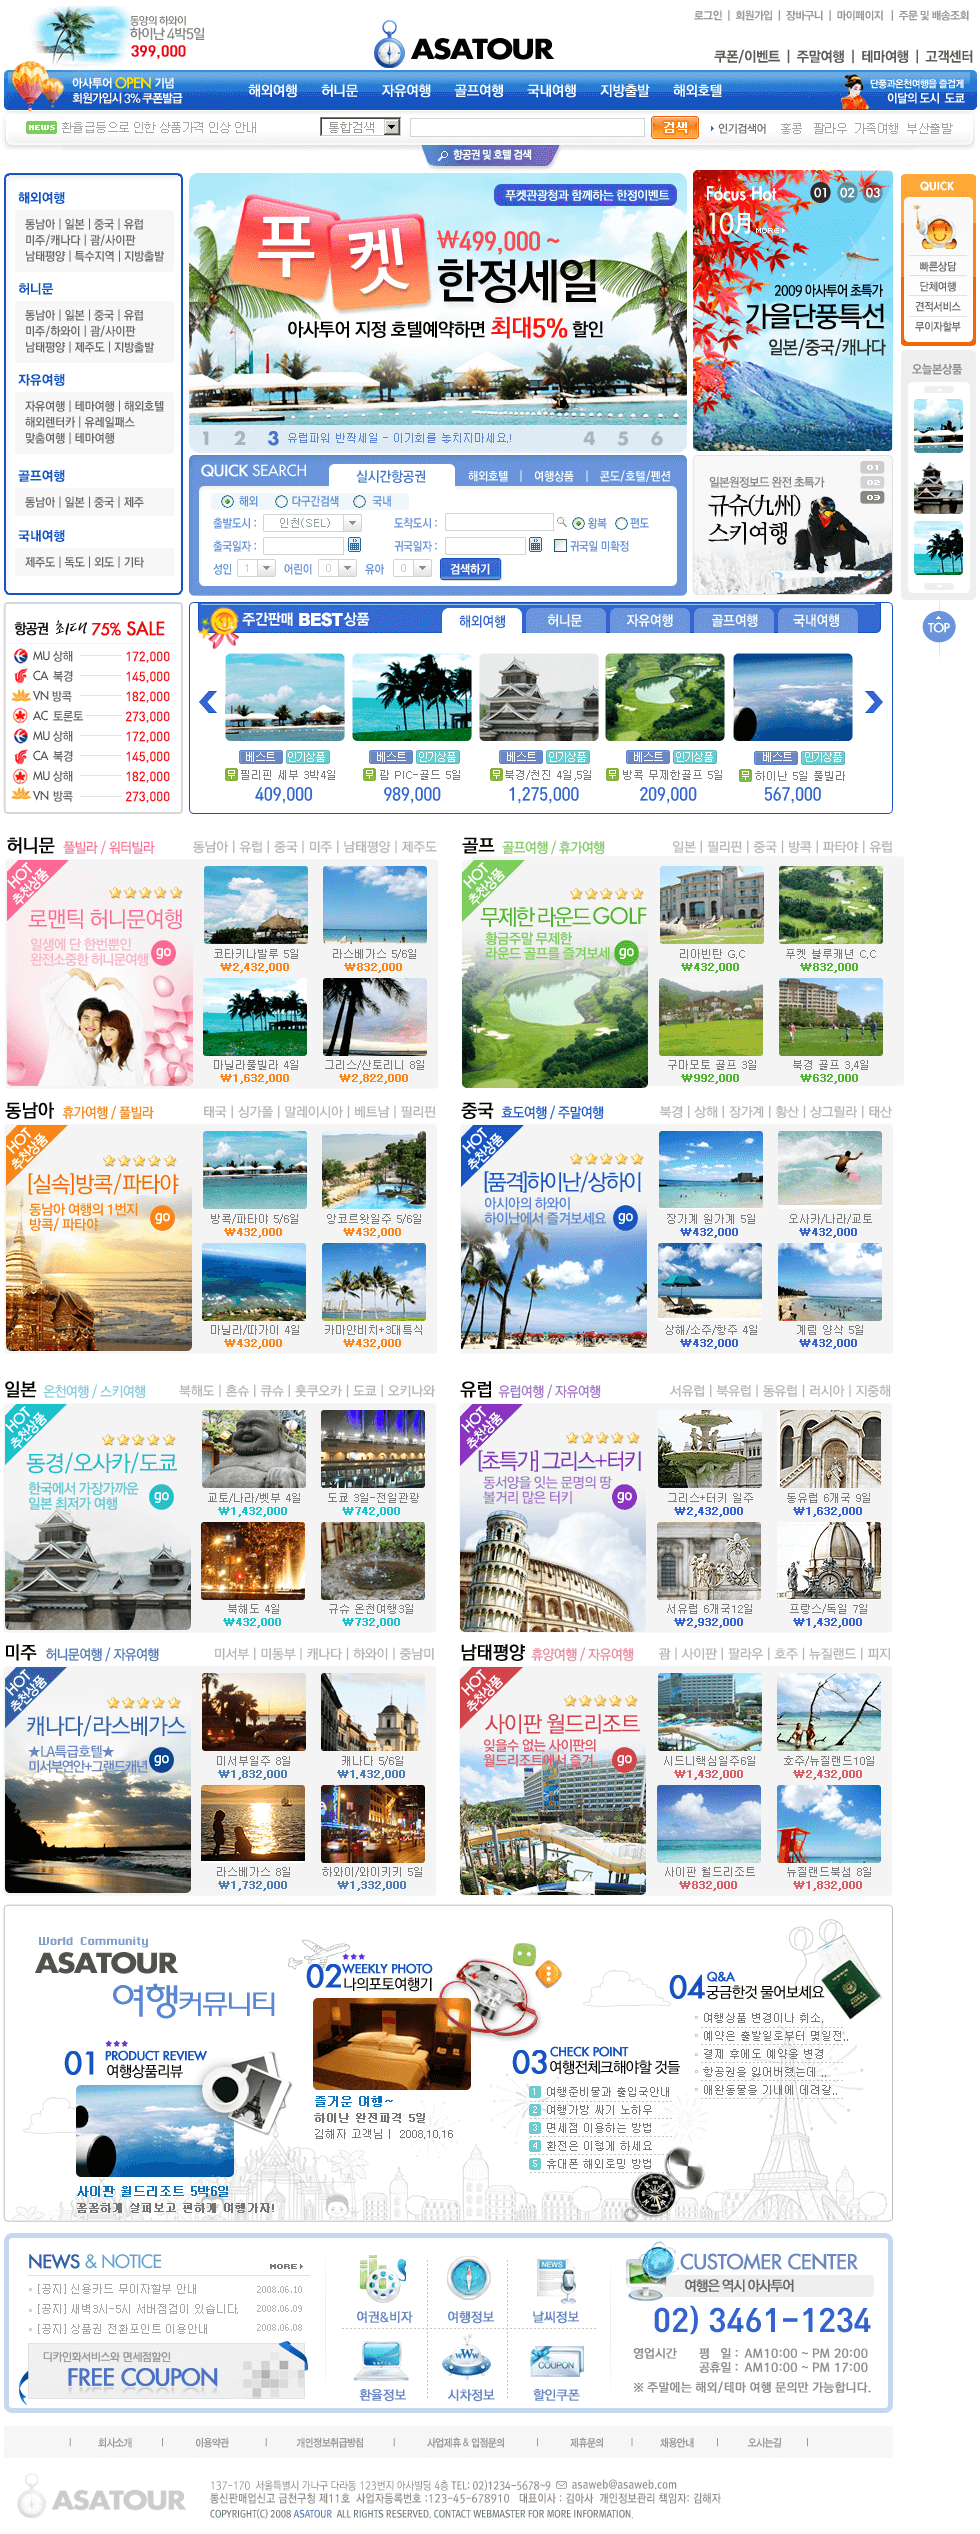 韩国ASATOUR旅游网站PSD模板